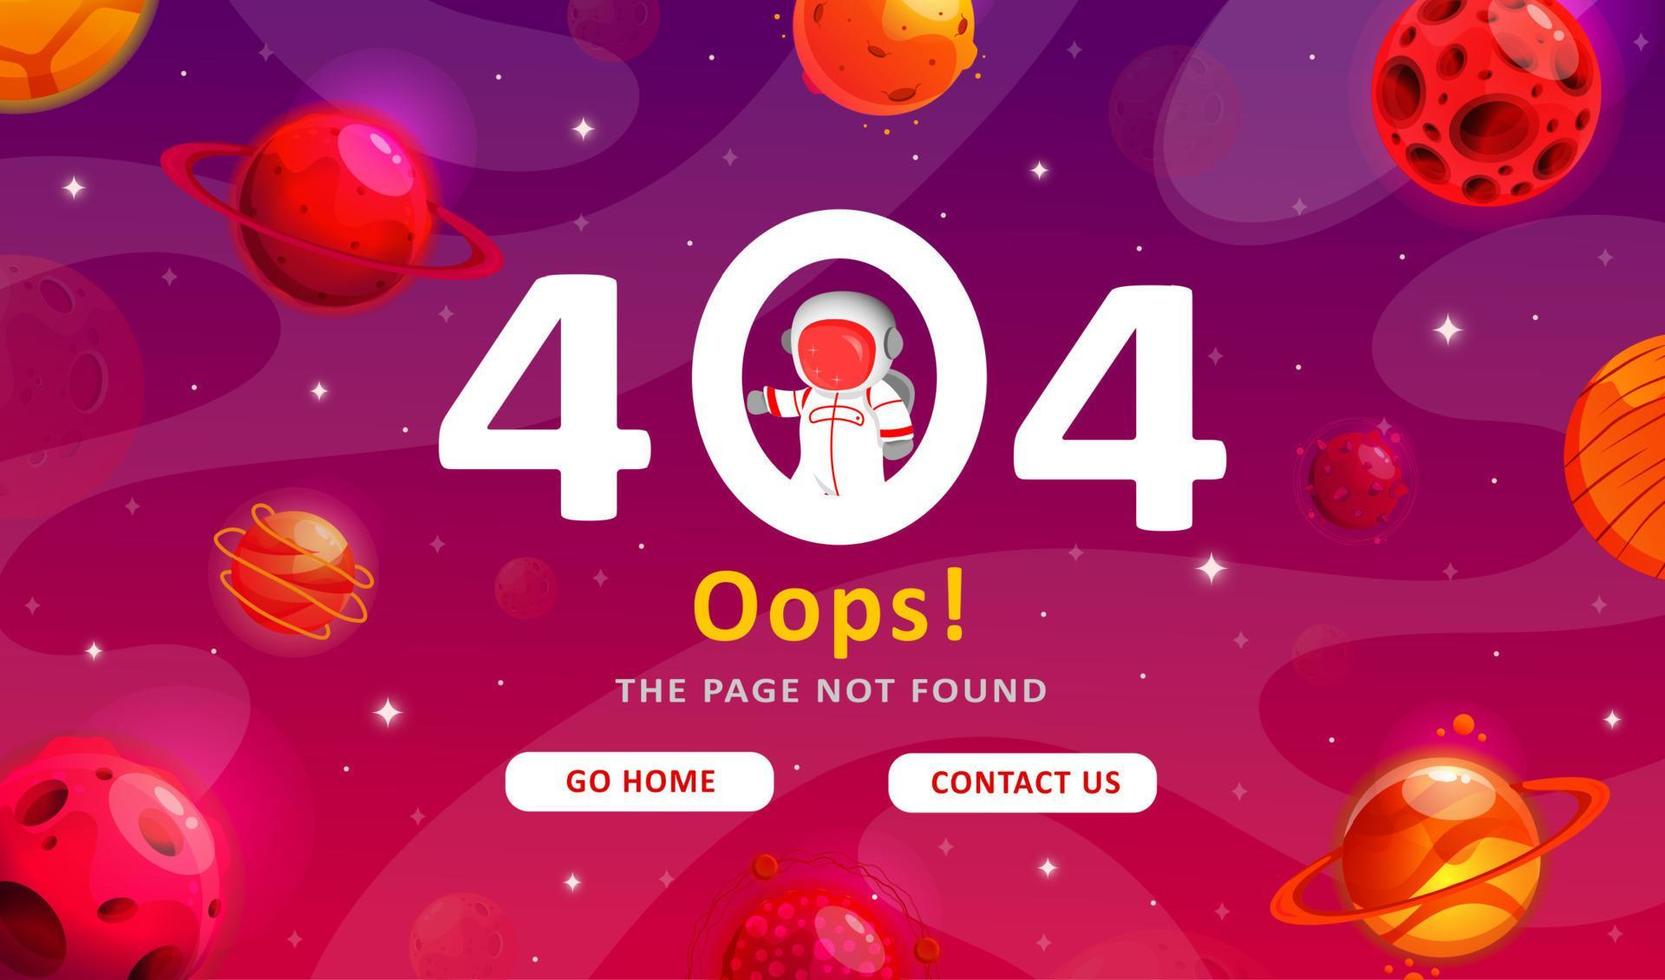 Erreur 404 - Page non trouvée. fond moderne d'exploration spatiale. joli modèle de dégradé avec des planètes et des étoiles pour une affiche, une bannière ou une page de site Web. vecteur